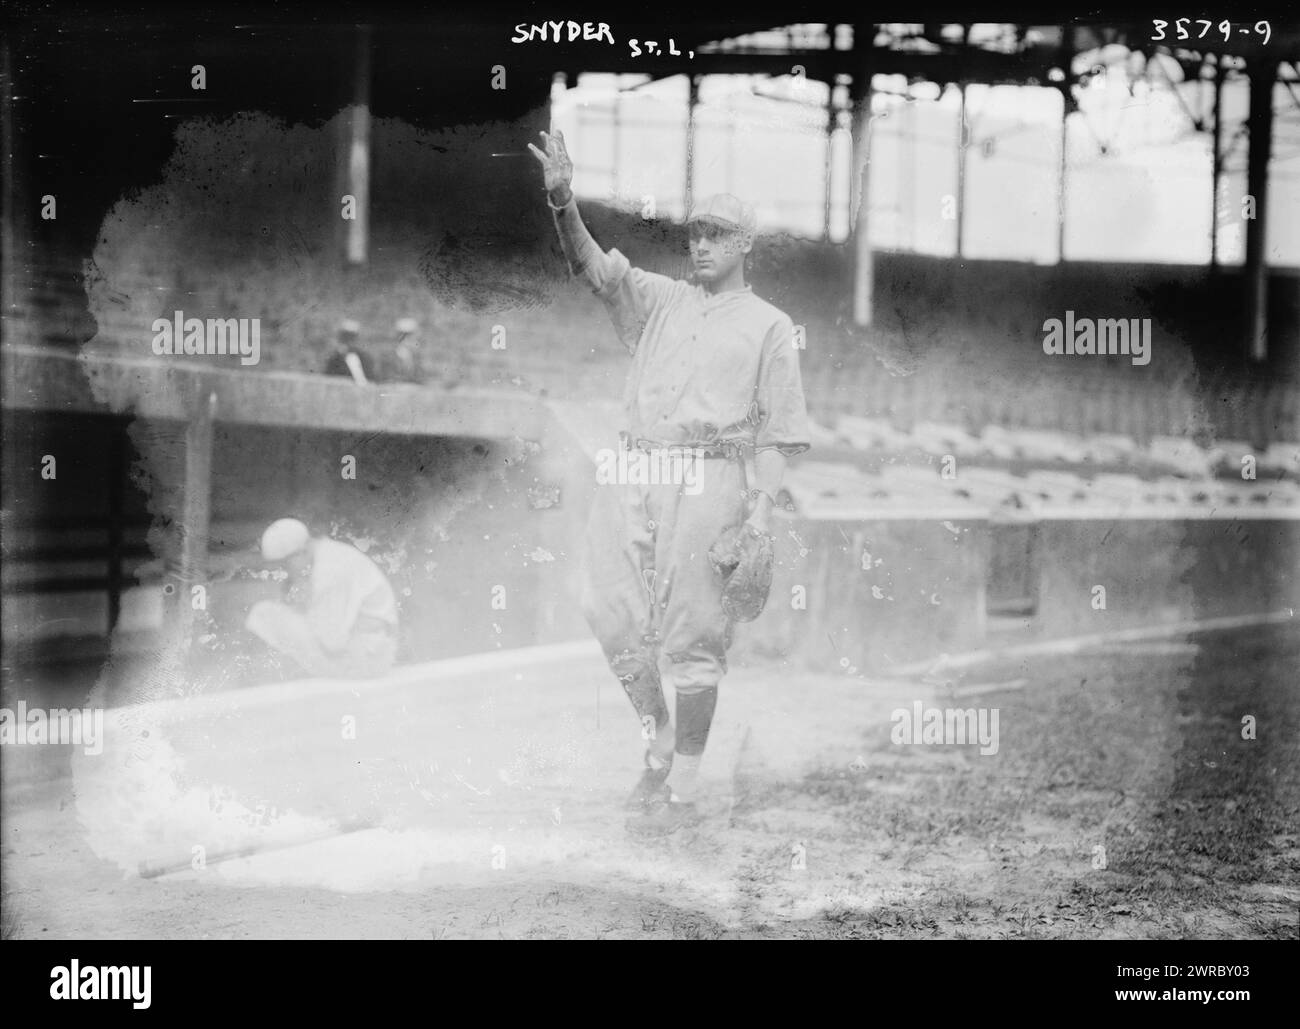 Frank Snyder, St. Louis NL (baseball), 1914, Glass negatives, 1 negative: glass Stock Photo